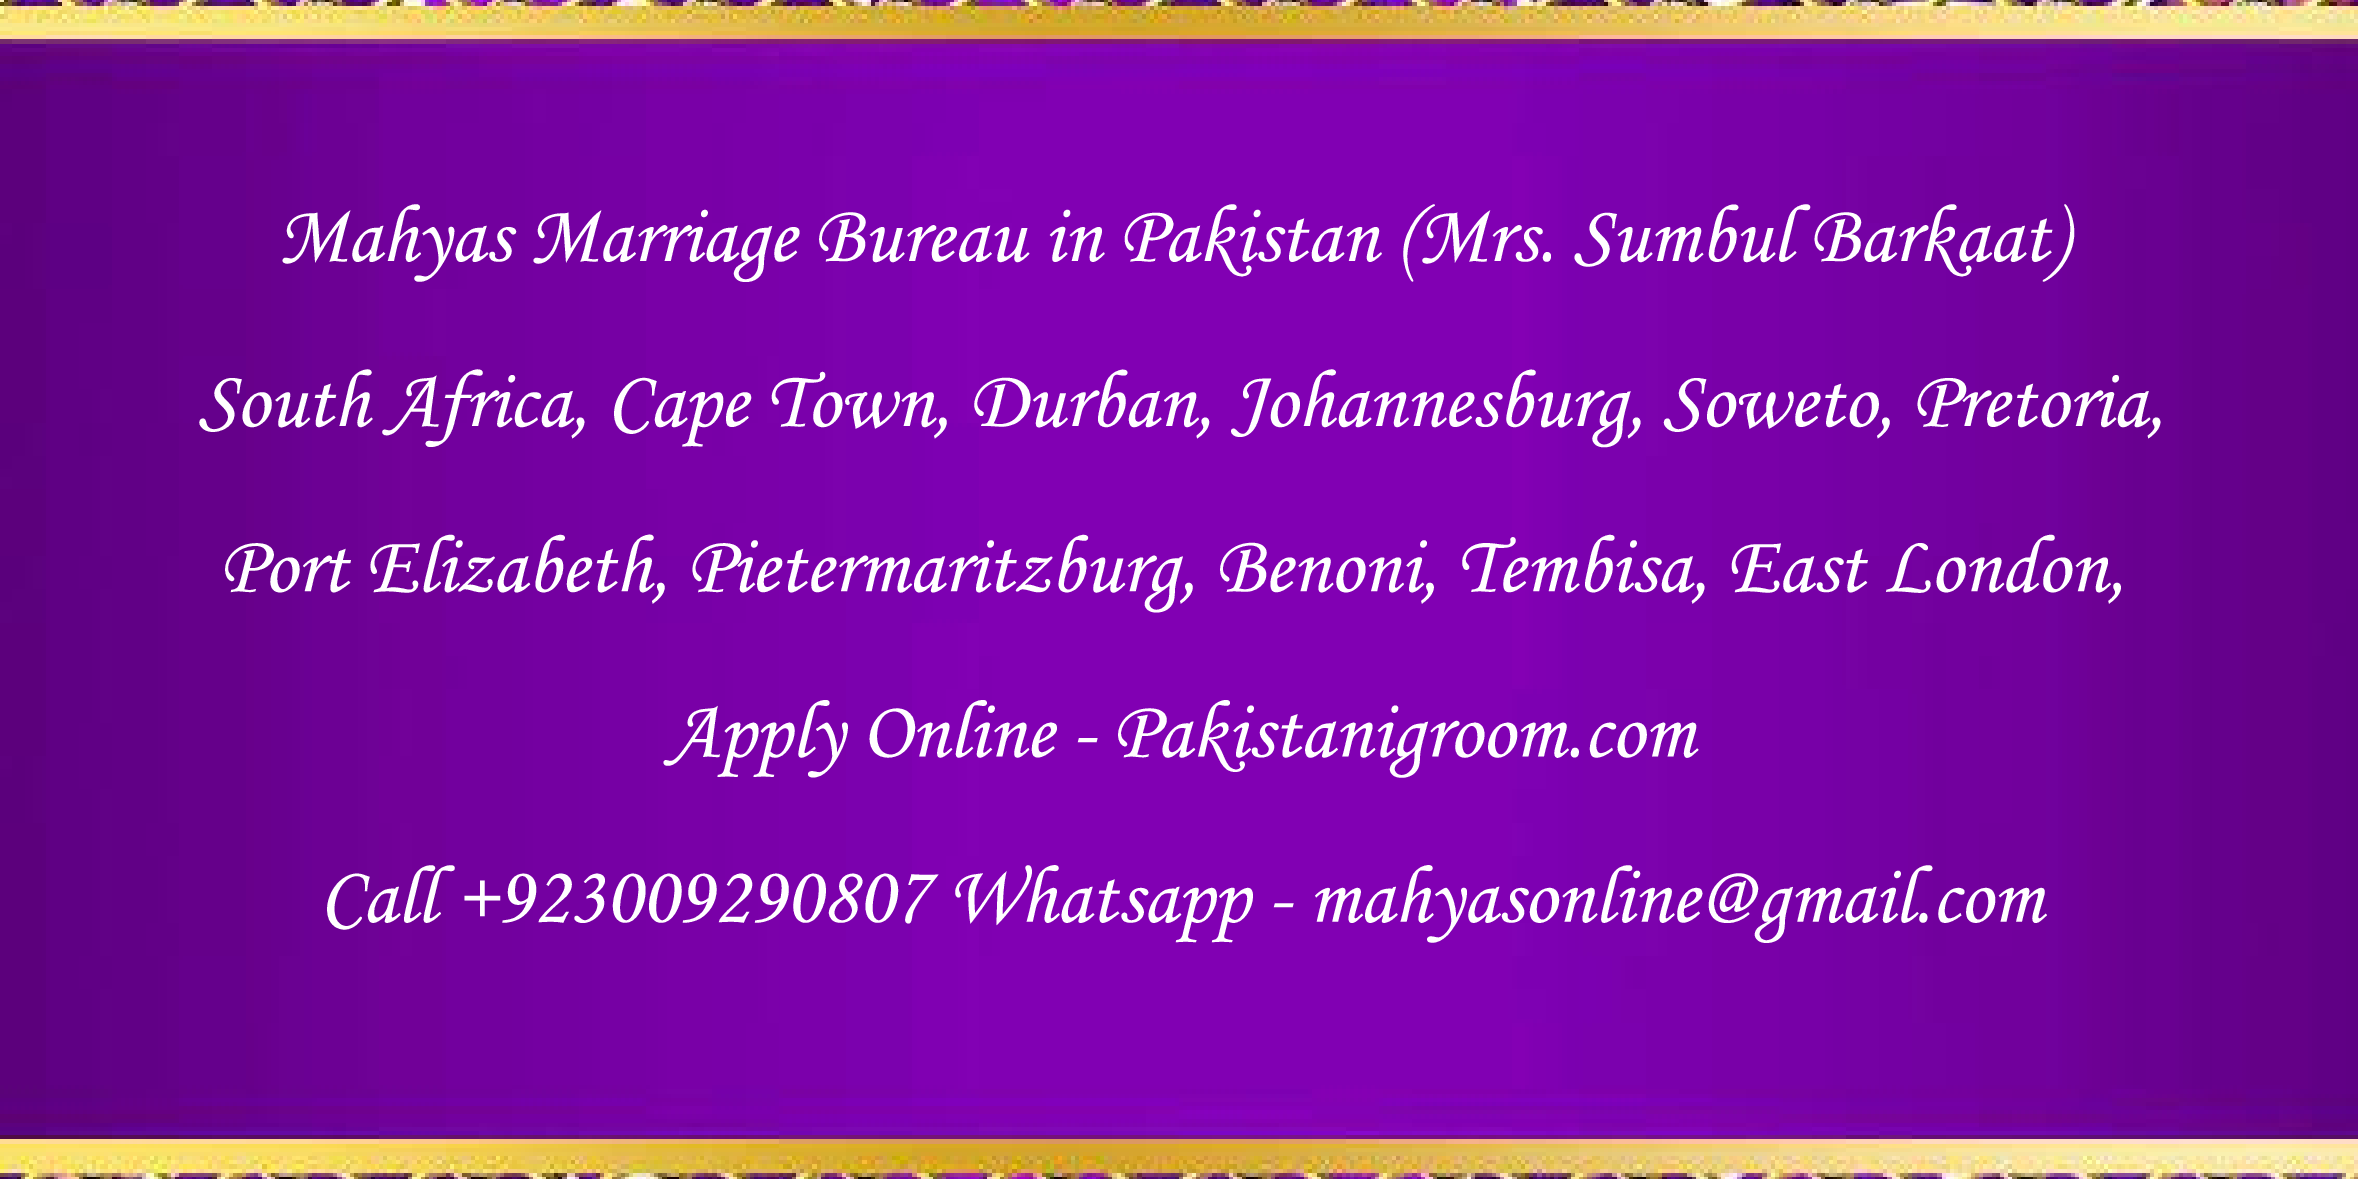 Mahyas-marriage-bureau-Karachi-Pakistan-for-Shia-Sunni-Remarriage-Divorce-Widow-Second-marriage-Punjabi-Pashto-Urdu-29.png